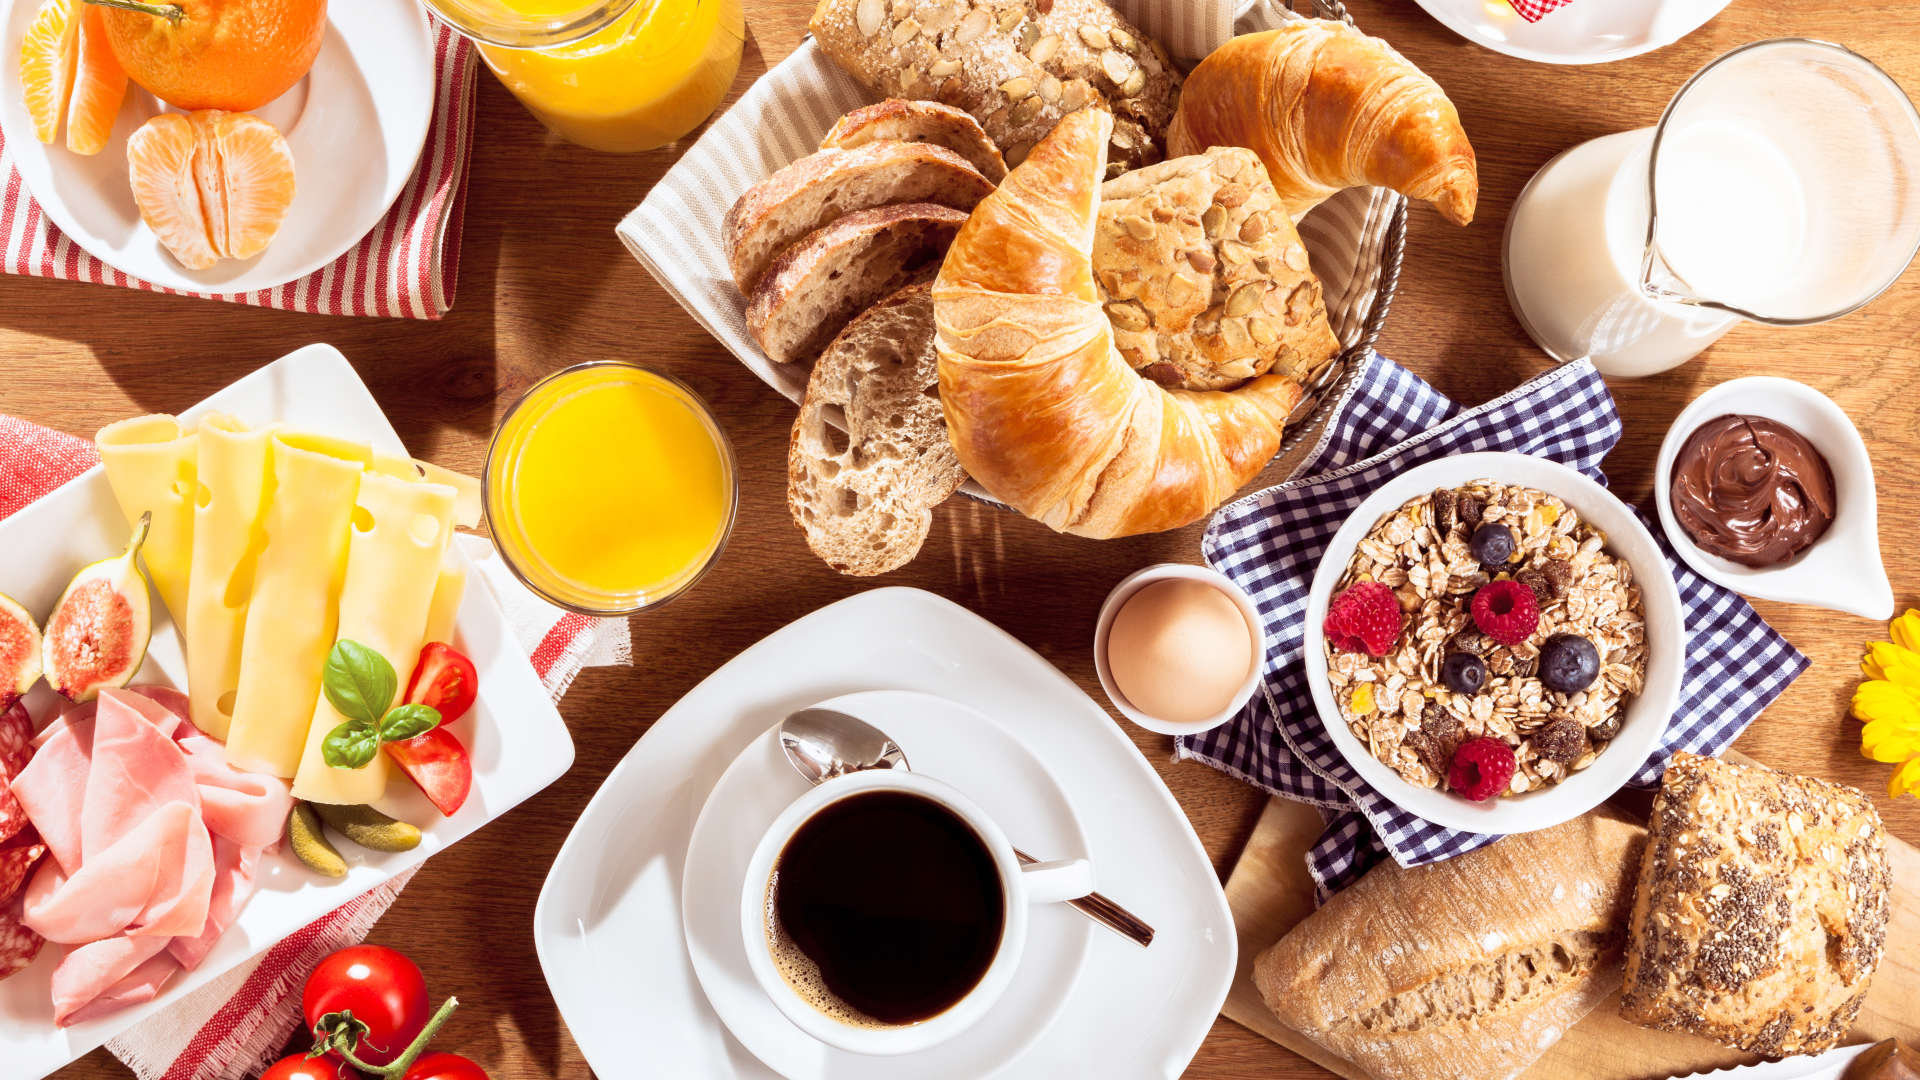 8 самых полезных продуктов для завтрака